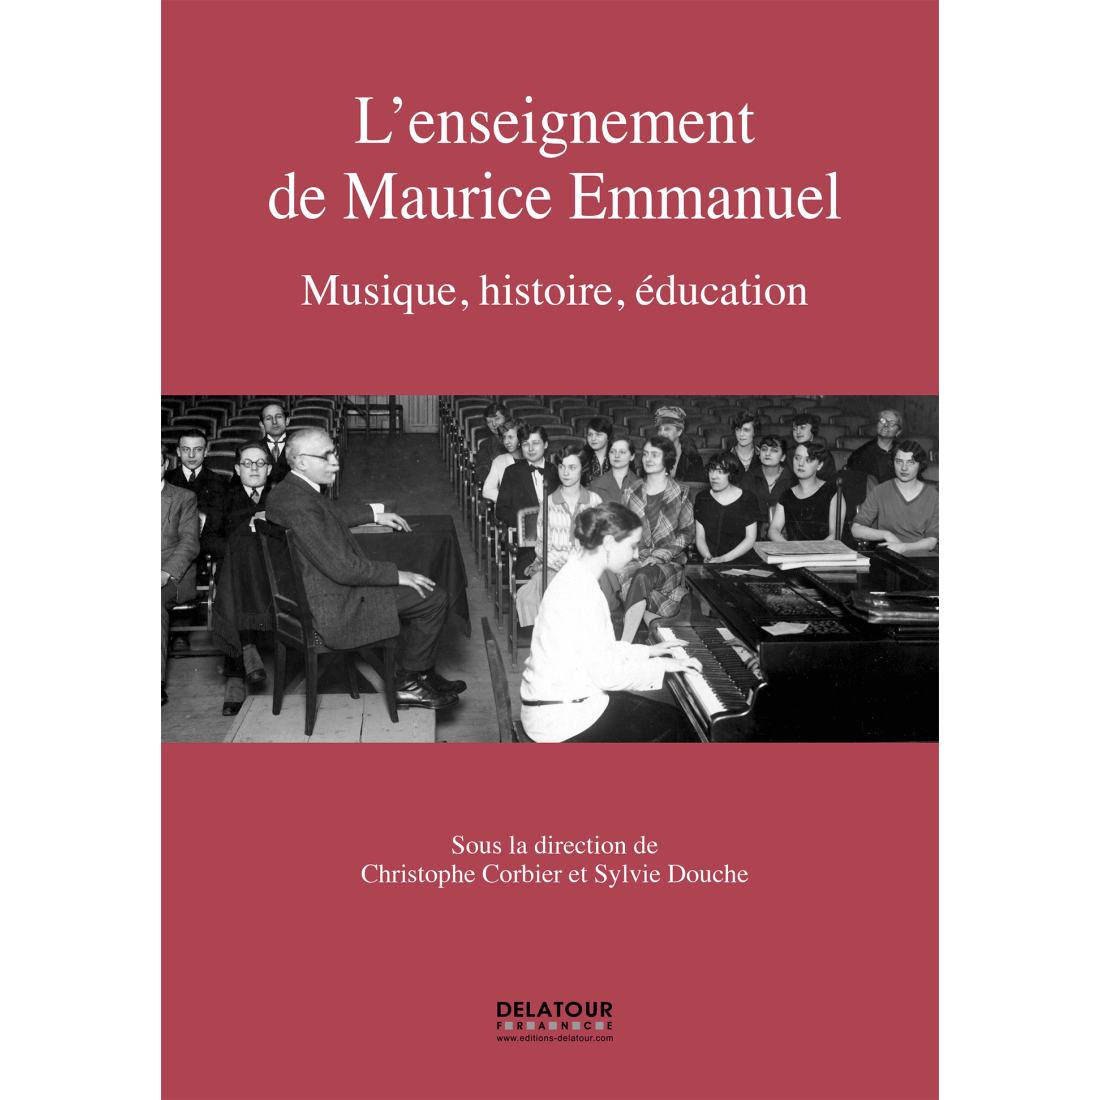 L'enseignement de Maurice Emmanuel - Musique, histoire, éducation